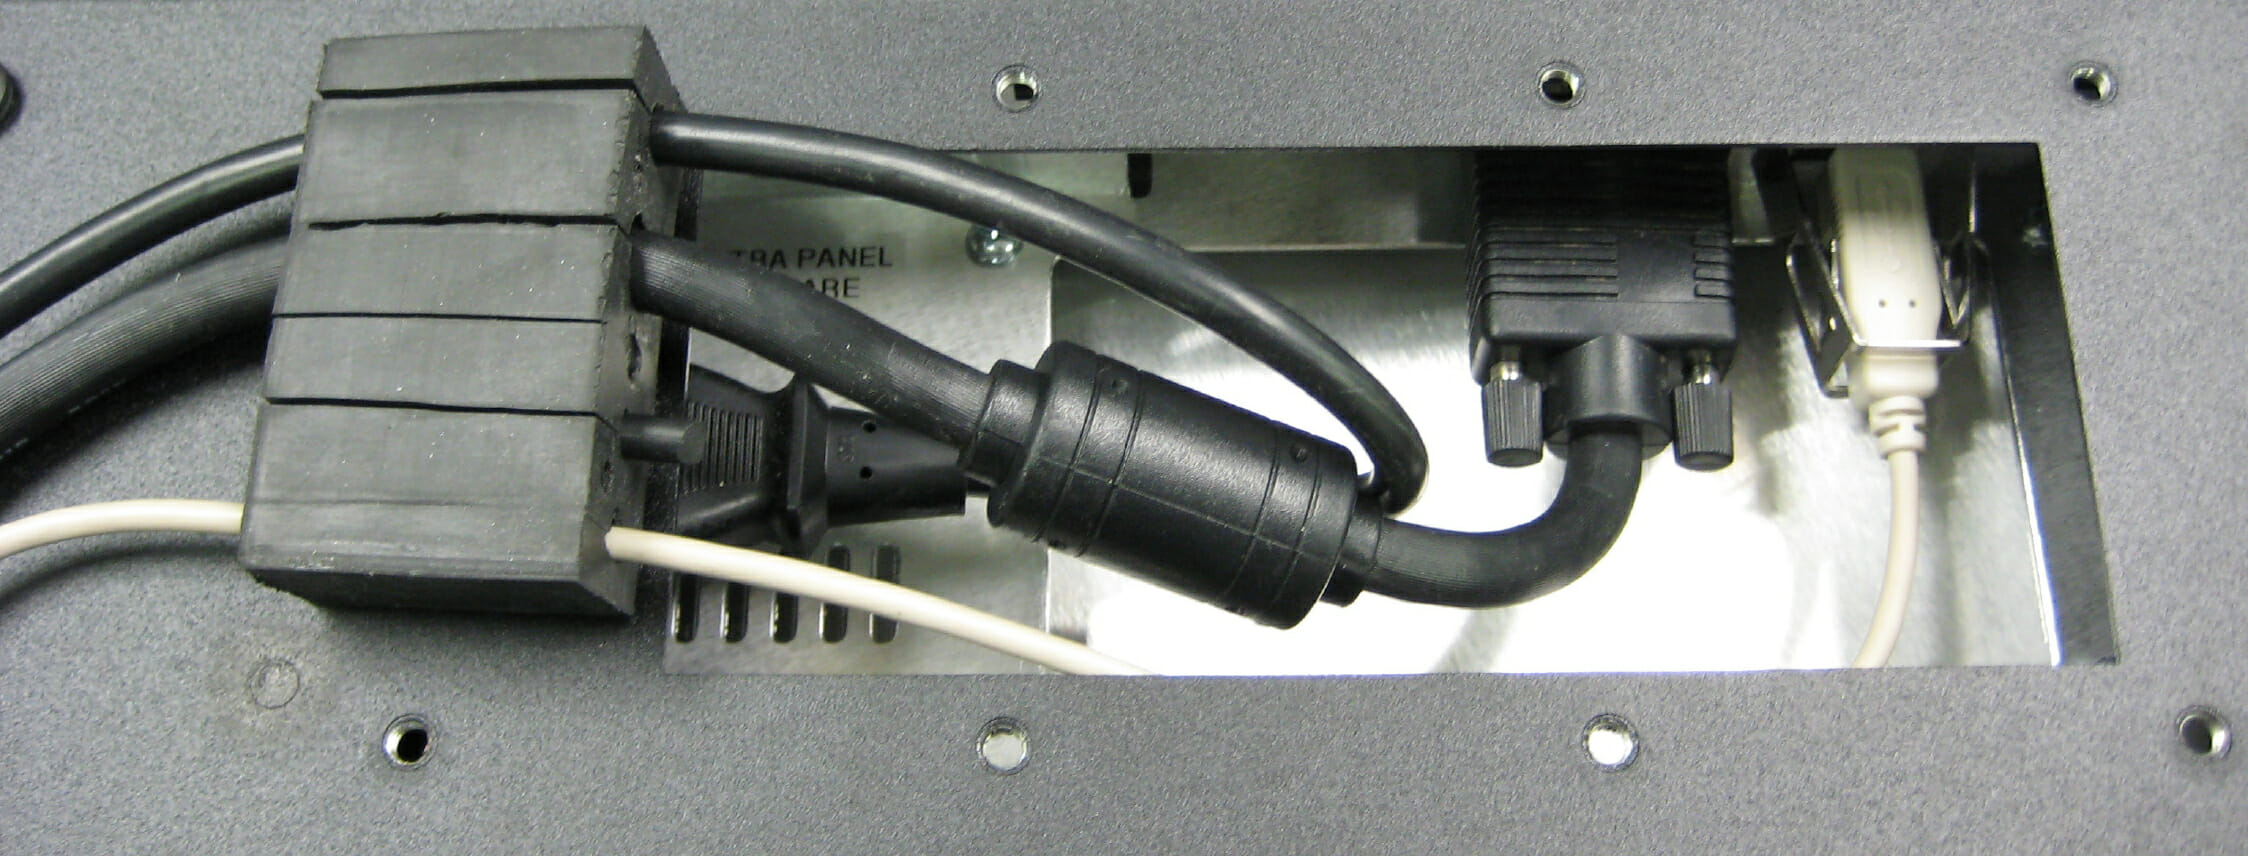 Salida para cables con prensaestopas: instalación de prensaestopas de goma